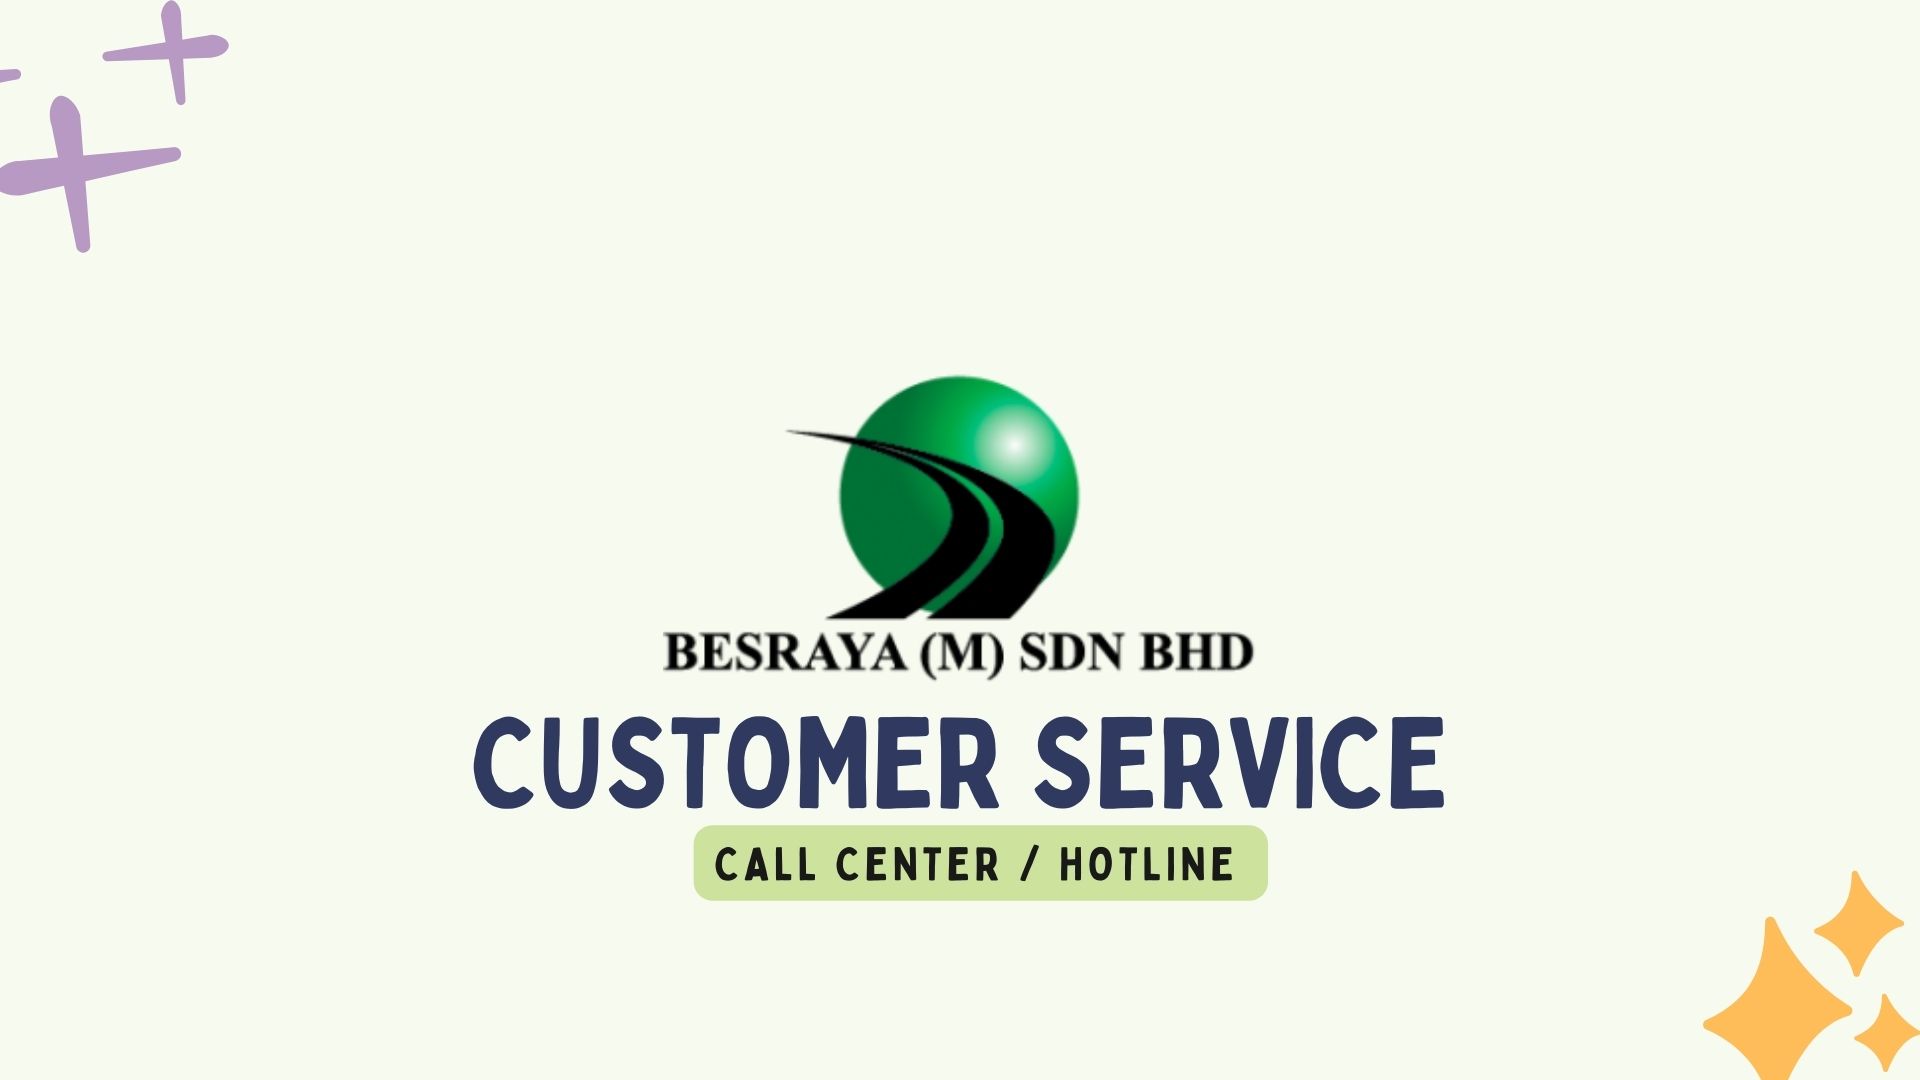 Besraya Customer Service